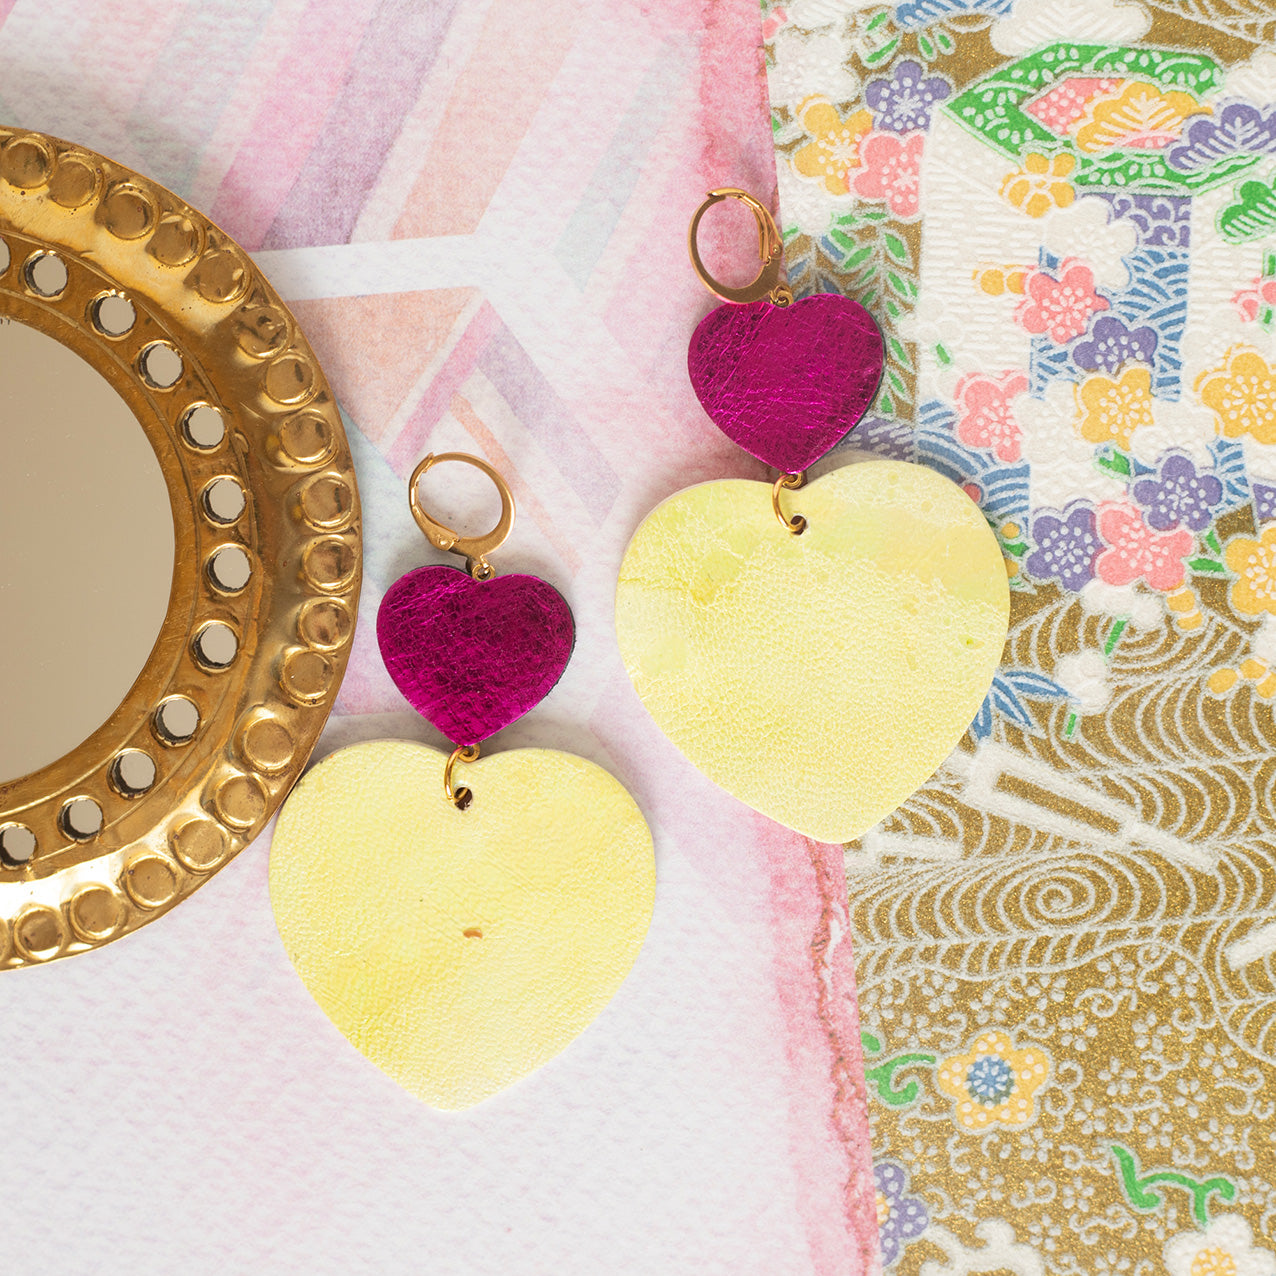 Double Hearts earrings - metallic fuchsia and yellow leather